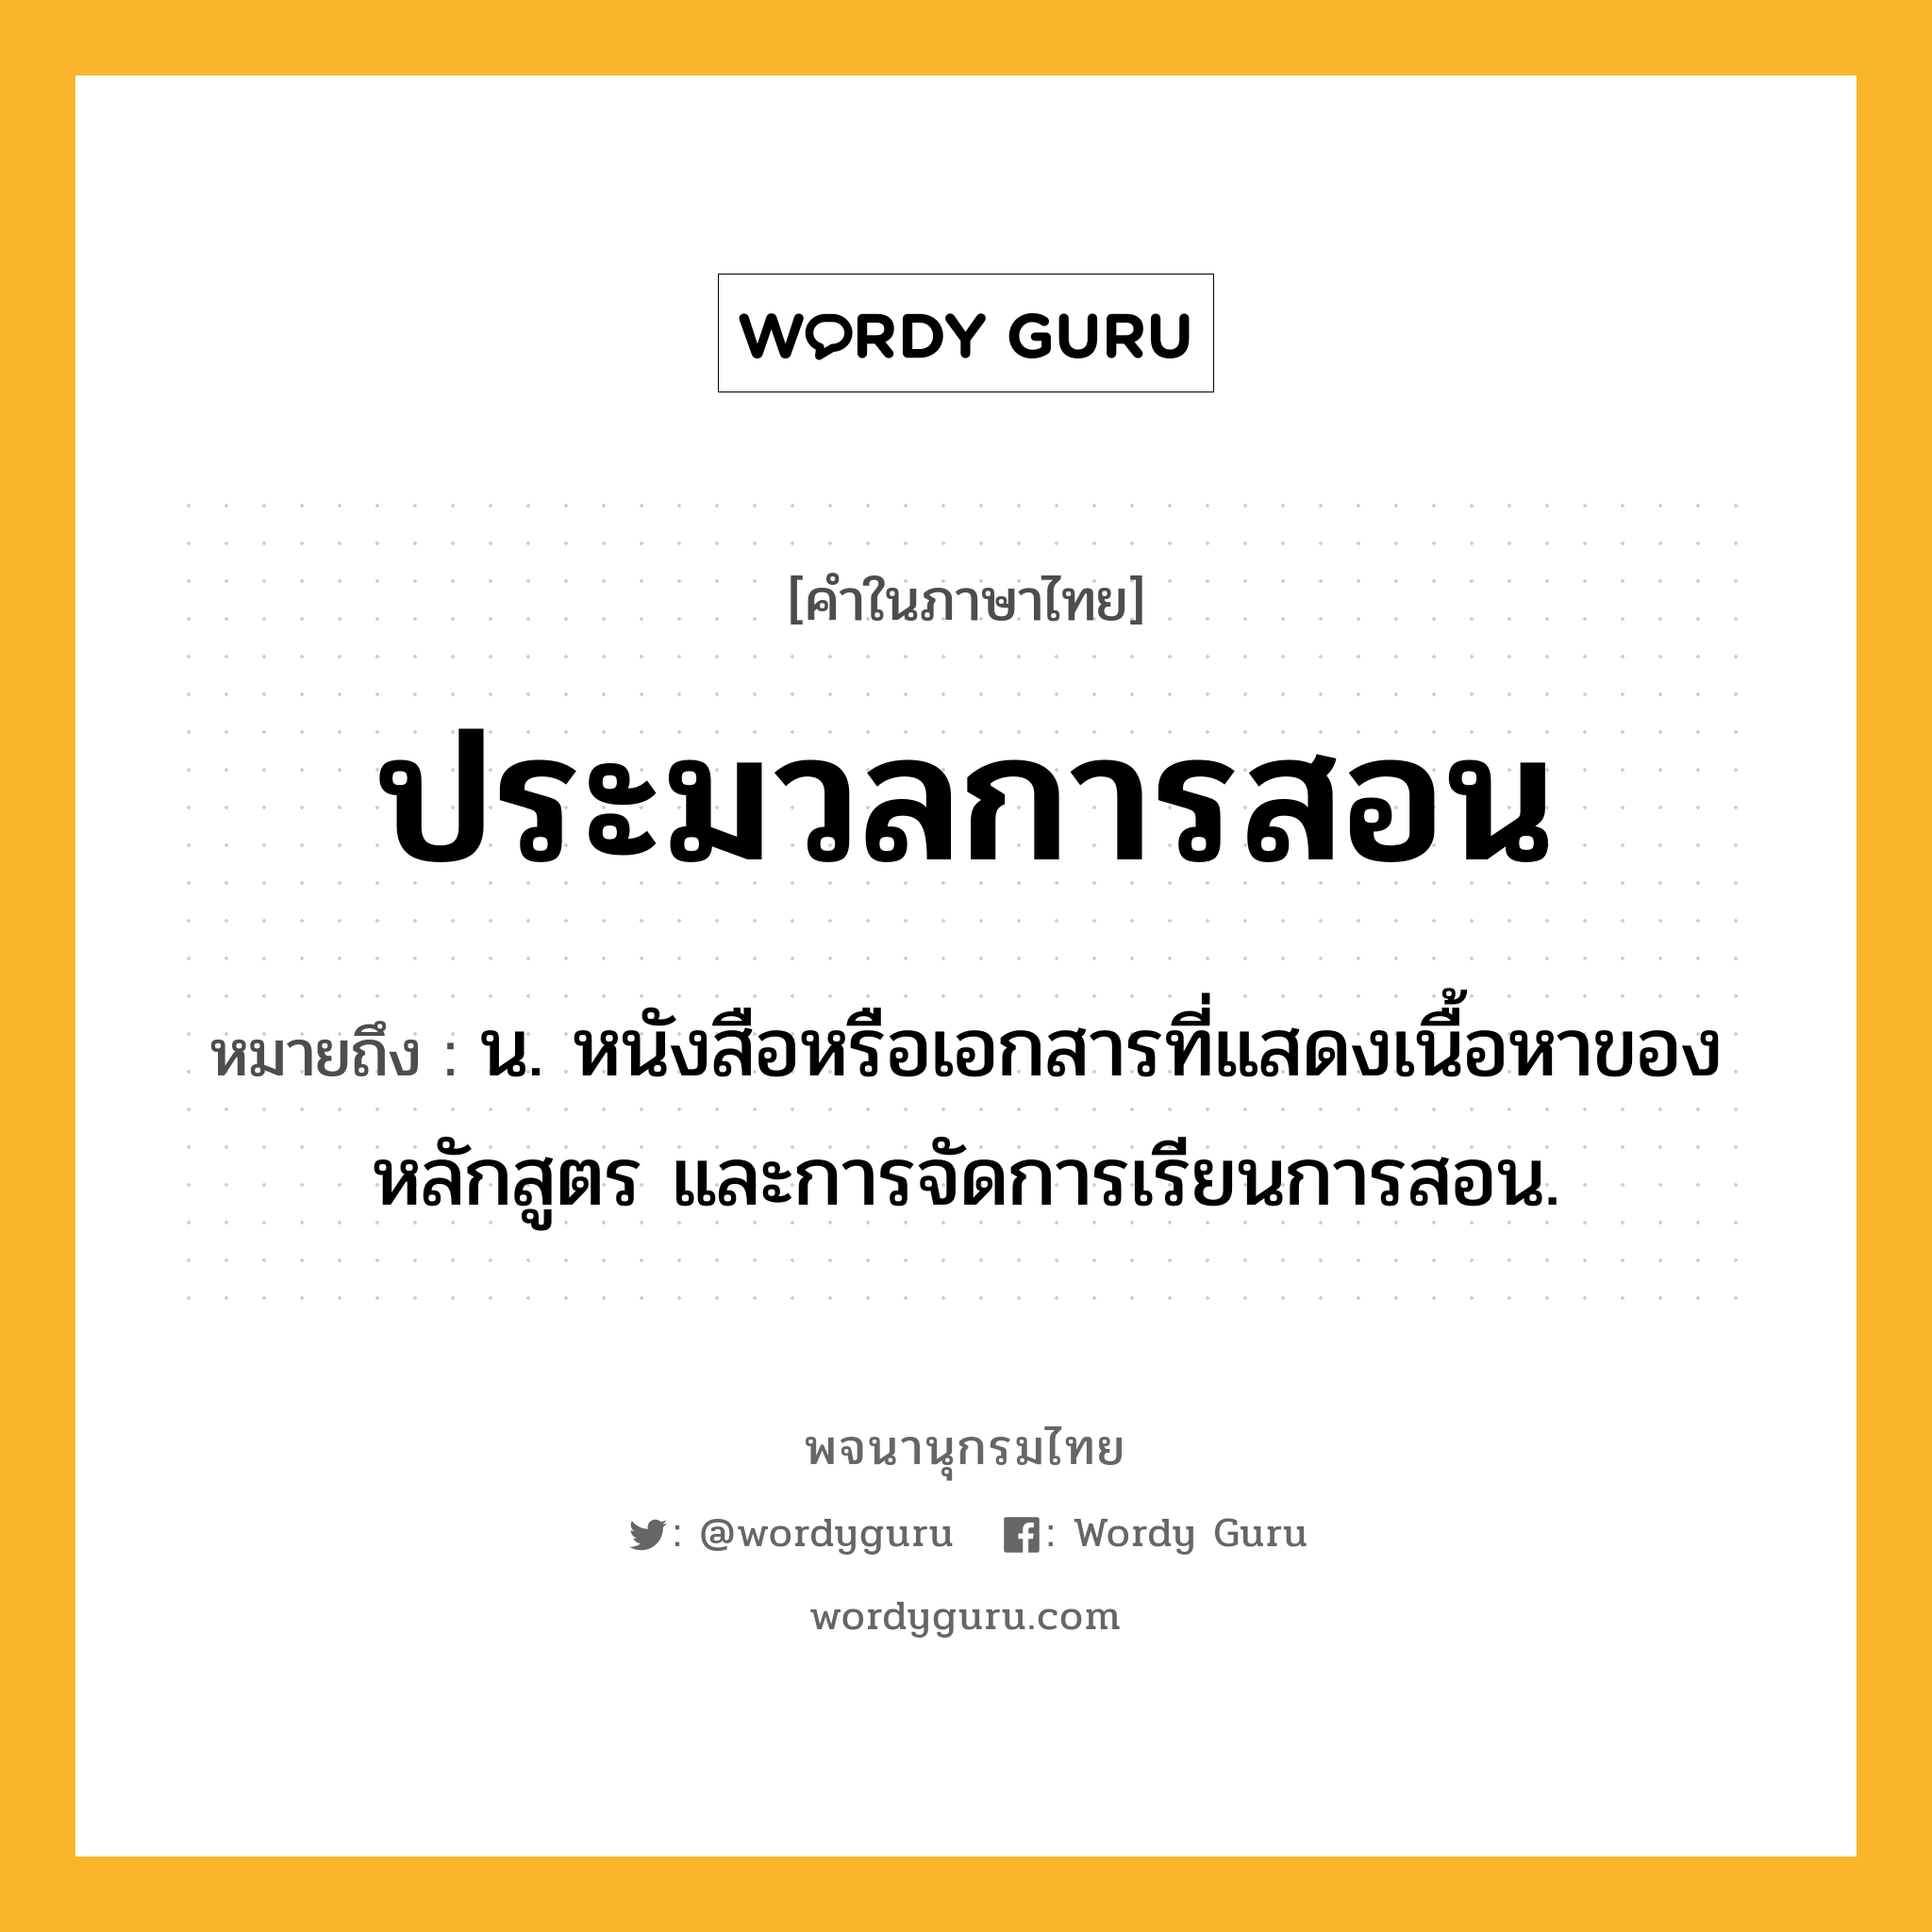 ประมวลการสอน ความหมาย หมายถึงอะไร?, คำในภาษาไทย ประมวลการสอน หมายถึง น. หนังสือหรือเอกสารที่แสดงเนื้อหาของหลักสูตร และการจัดการเรียนการสอน.